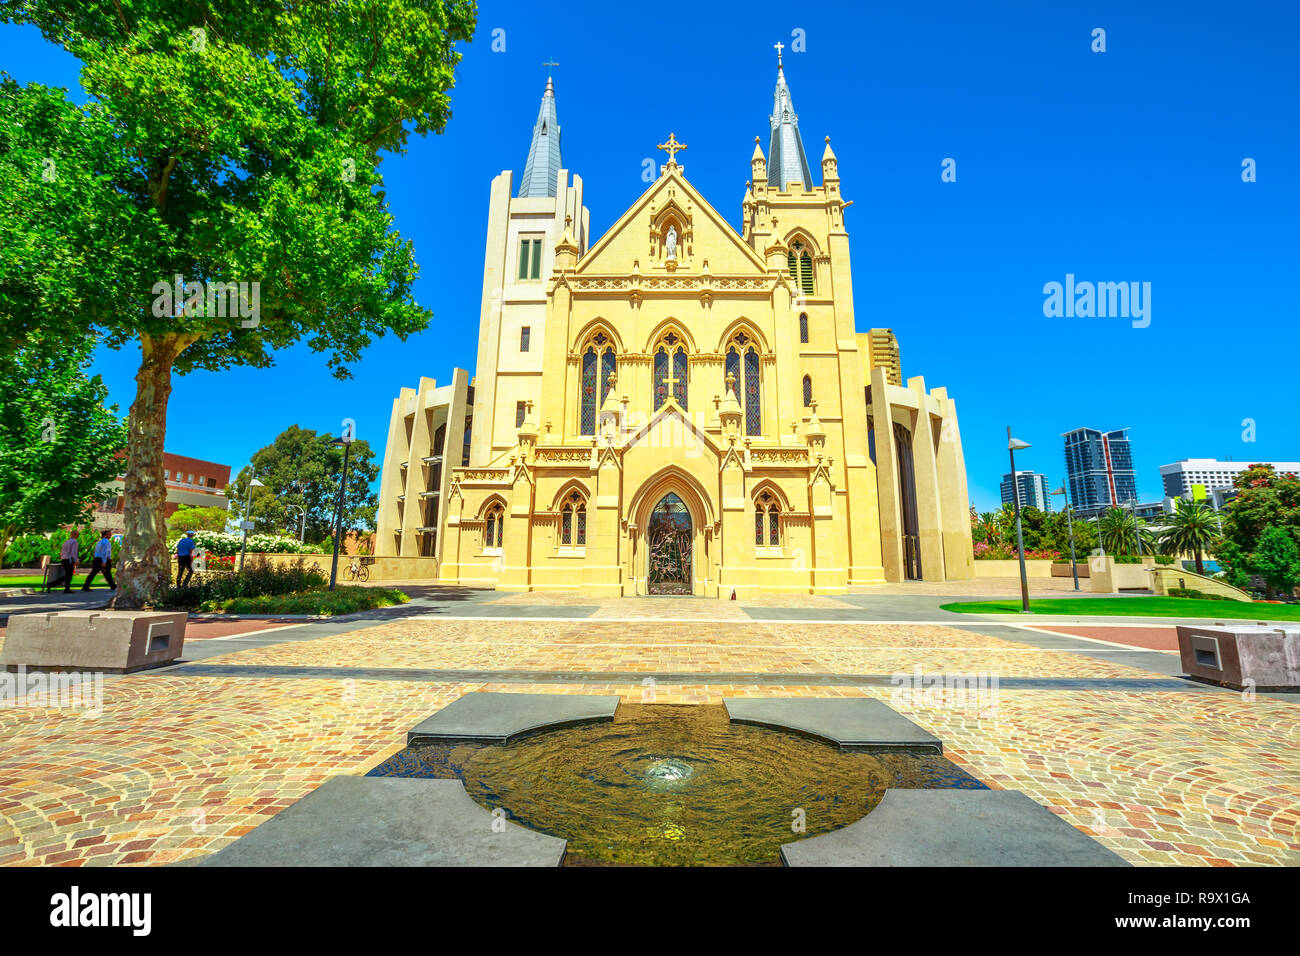 Vue de face de la cathédrale St Mary à Perth, Australie occidentale. Cathédrale de l'Immaculée Conception de la Bienheureuse Vierge Marie avec soleil et ciel bleu. Banque D'Images